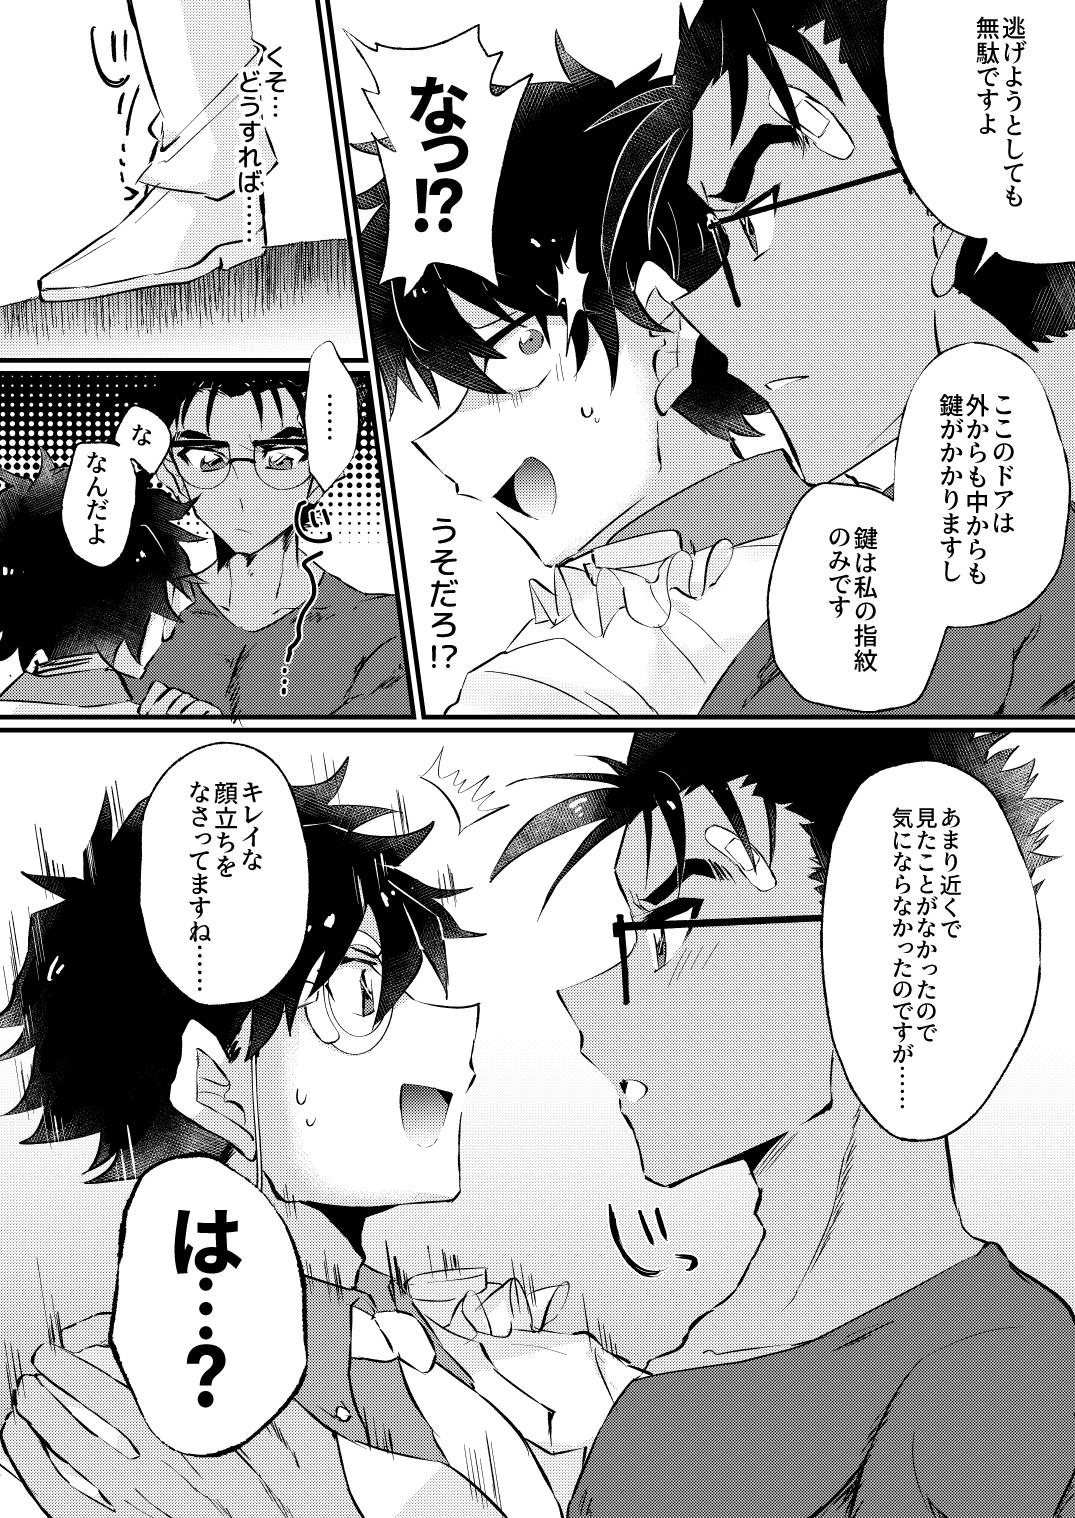 Enema [404] (Detective Conan) [Digital] - Detective conan | meitantei conan Culo - Page 8